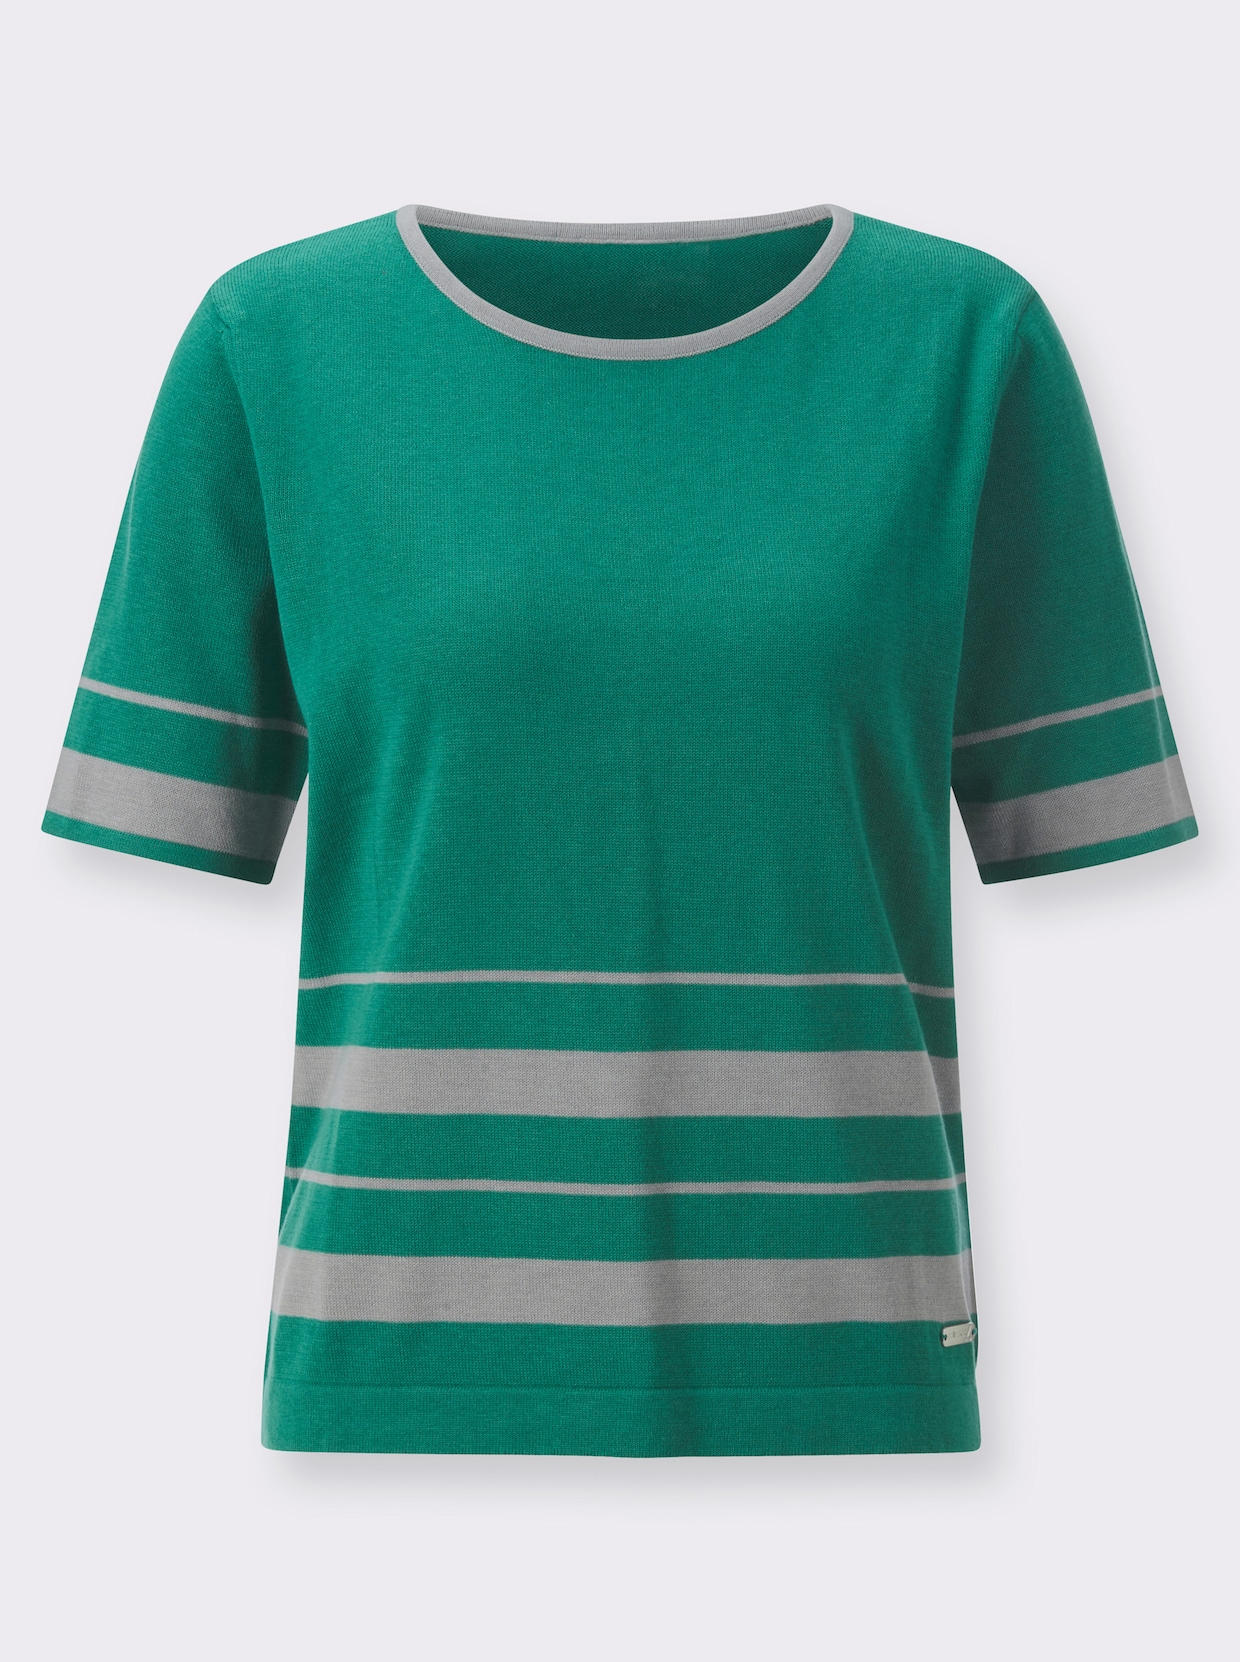 Pullover met korte mouwen - smaragdgroen/steengrijs gedessineerd